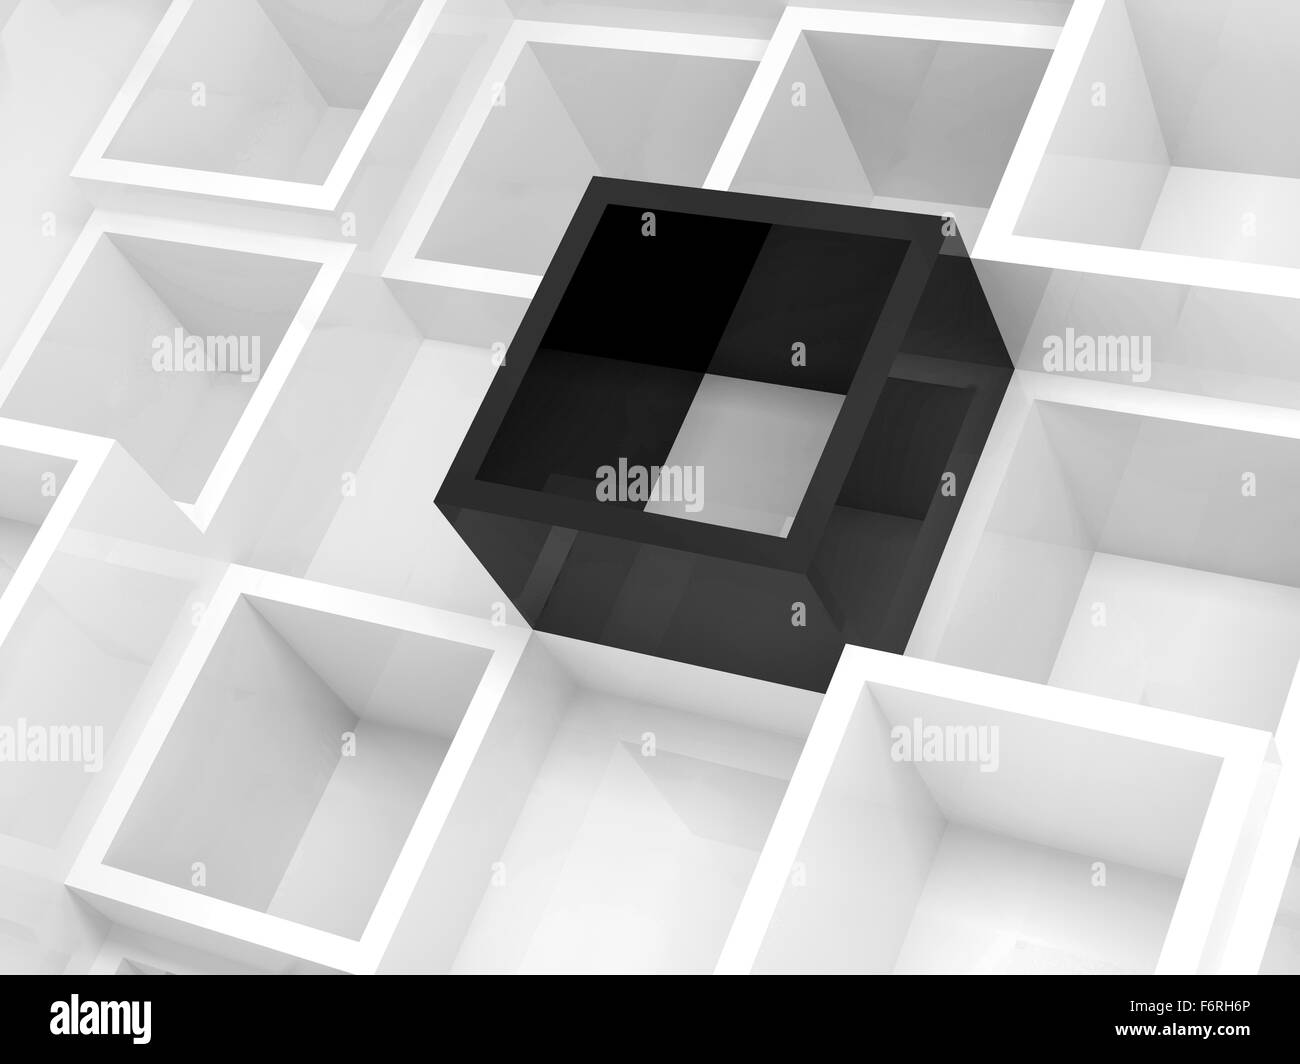 Résumé La conception 3d arrière-plan, carré blanc et un noir cellules élément, 3d illustration Banque D'Images